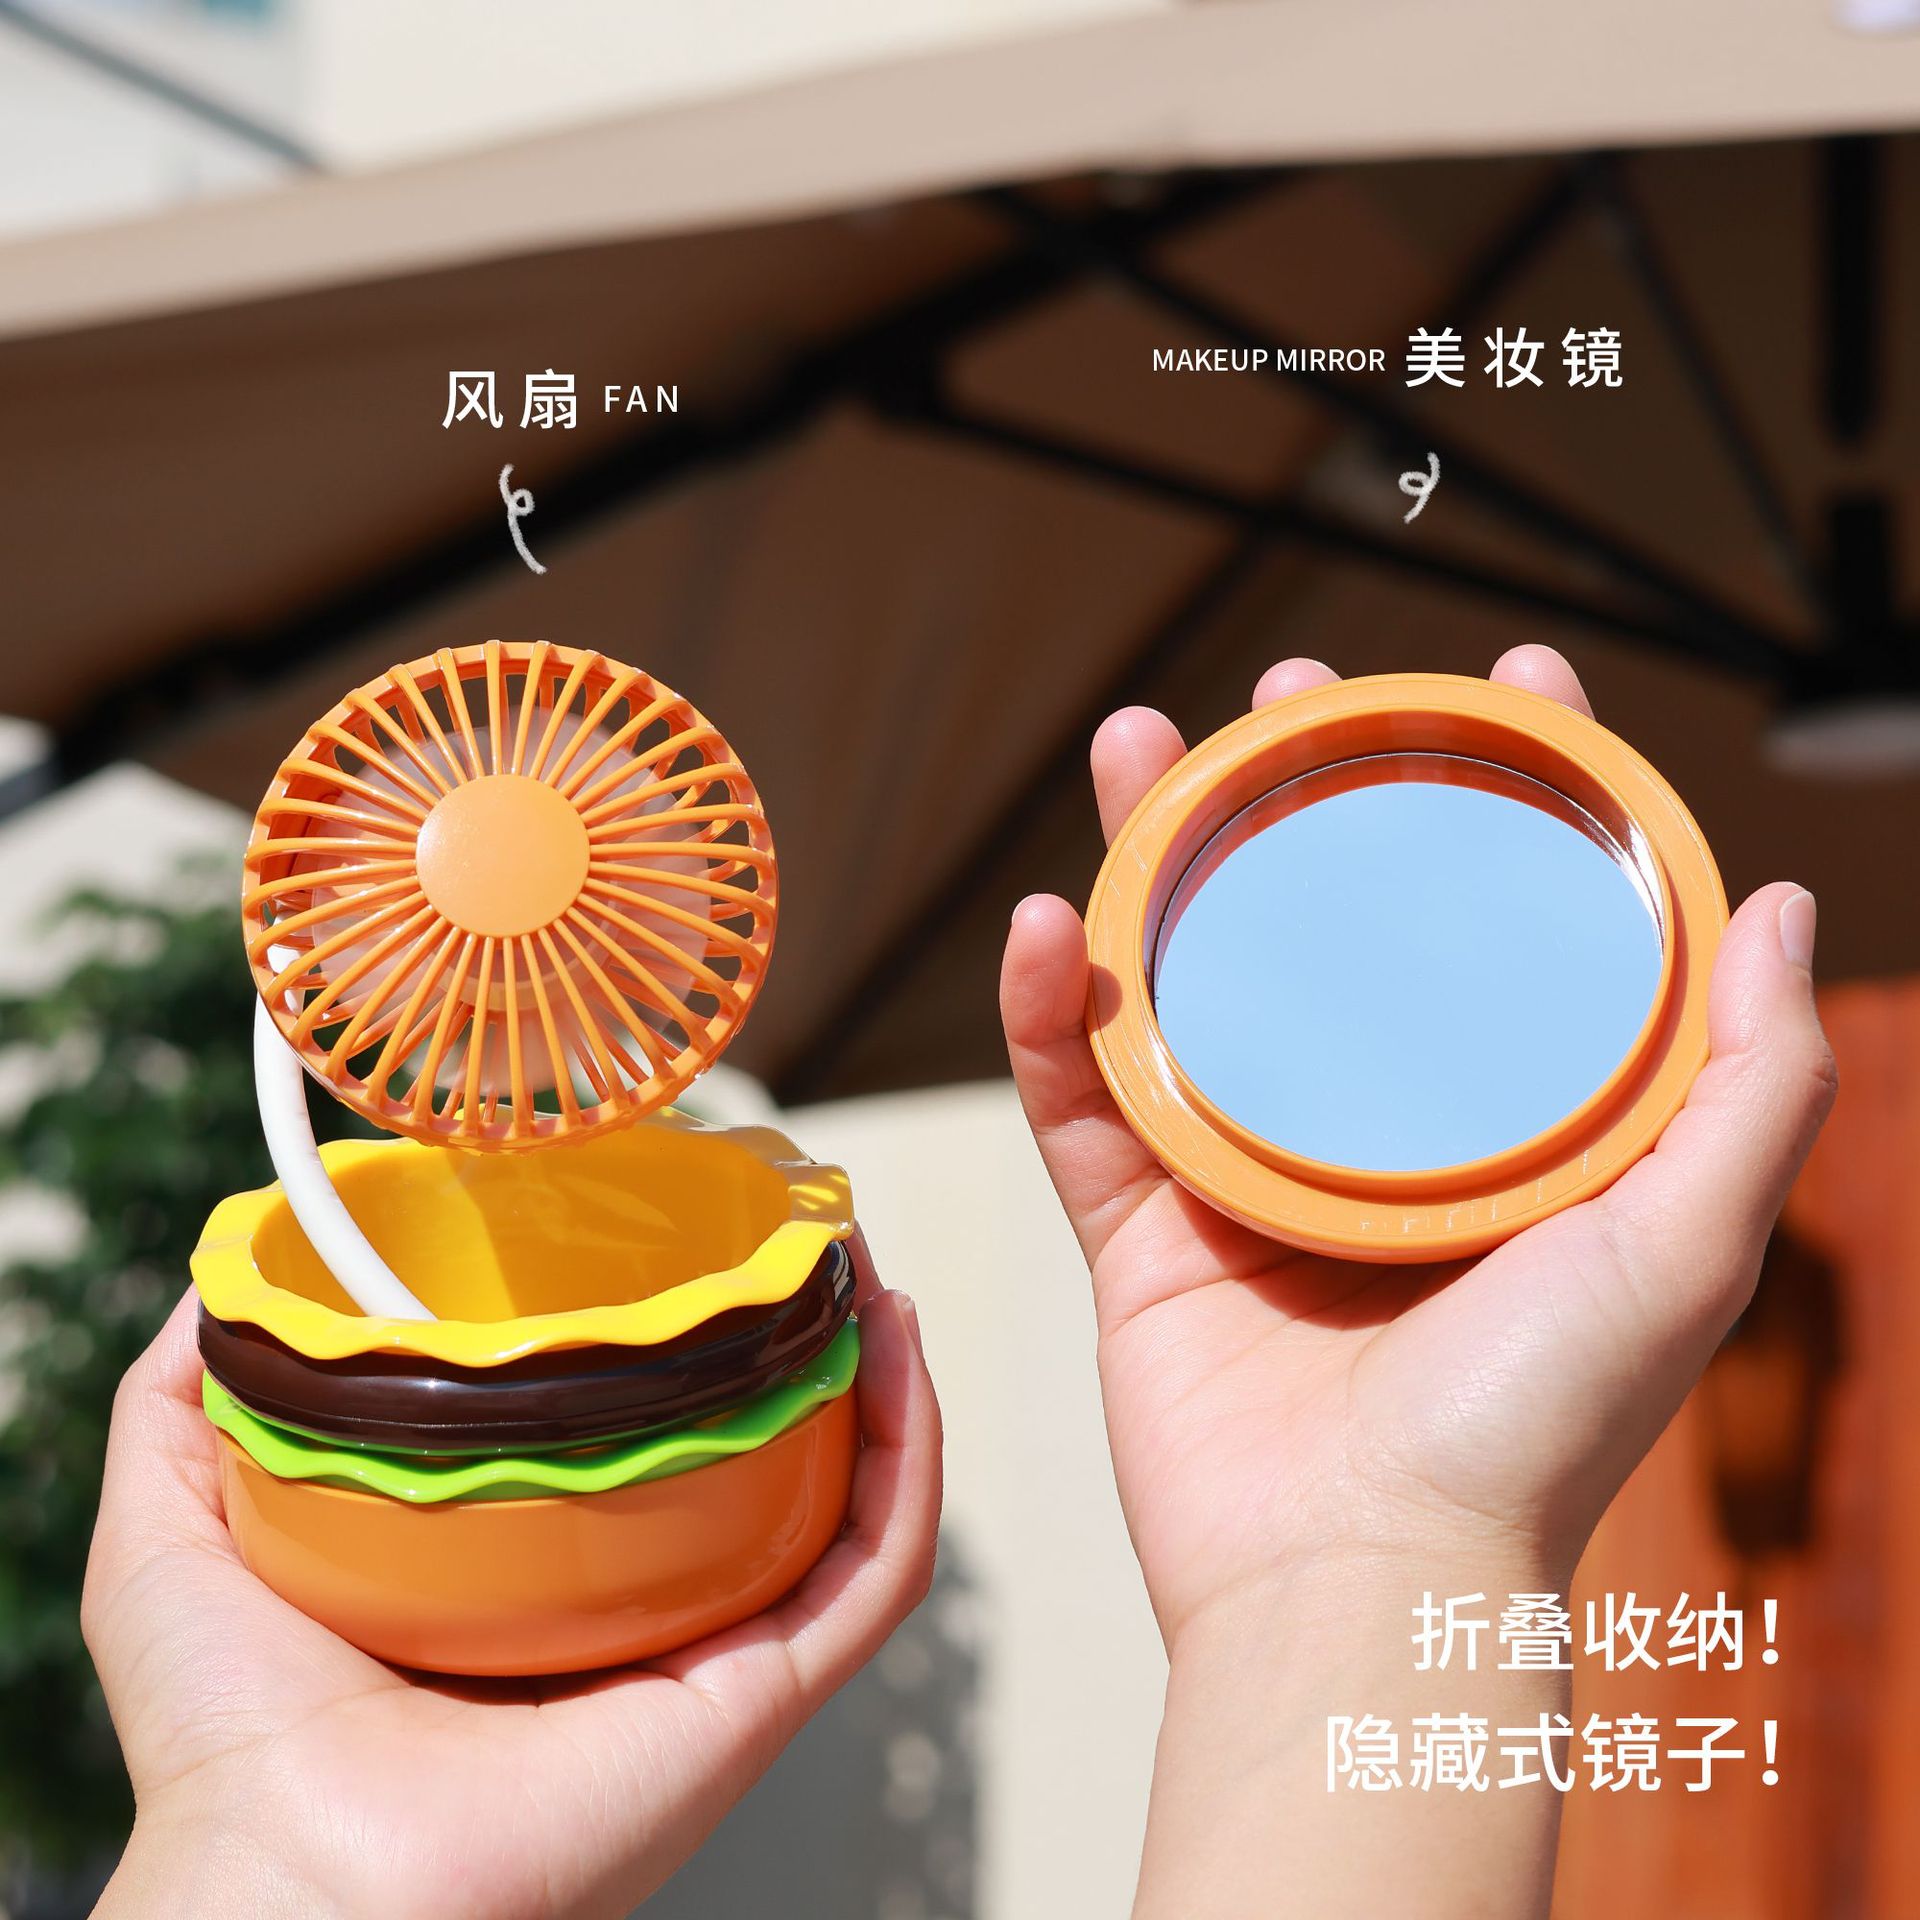 hamburg usb mini fan handheld cosmetic mirror portable office study rechargeable desktop fan cross-border